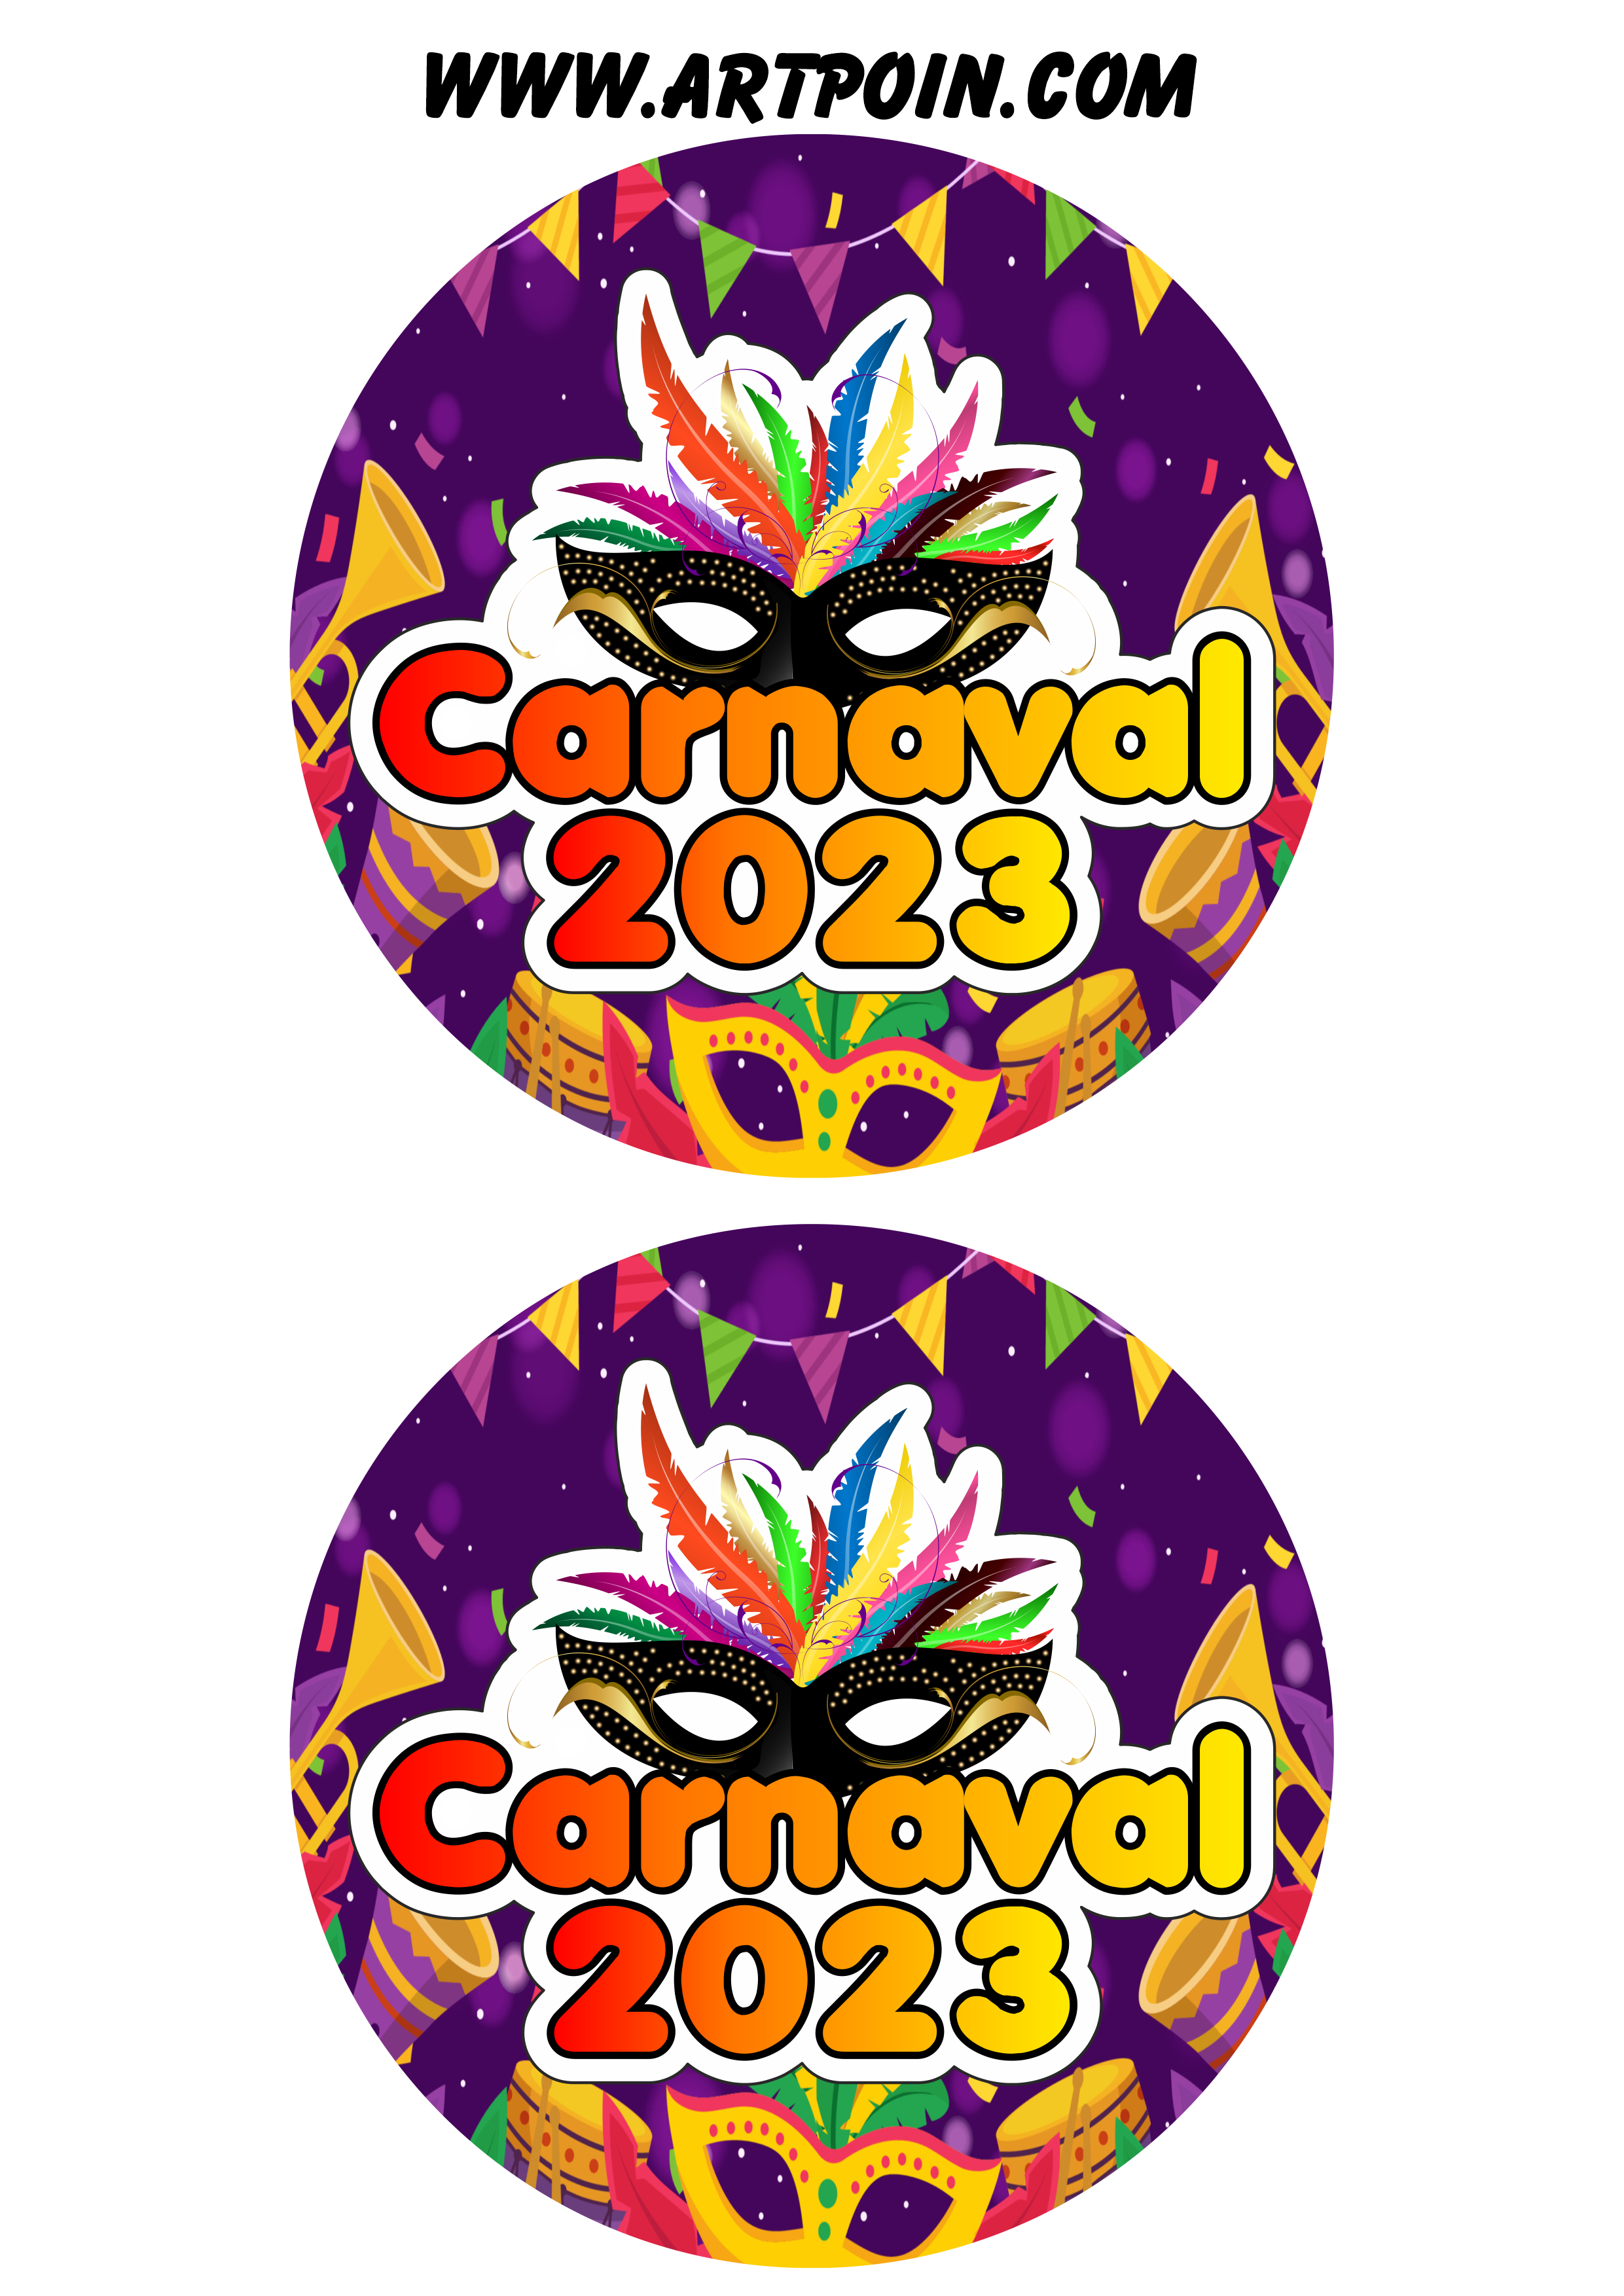 Carnaval 2023 adesivos stickers redondos pronto para imprimir e decorar 2 imagens png